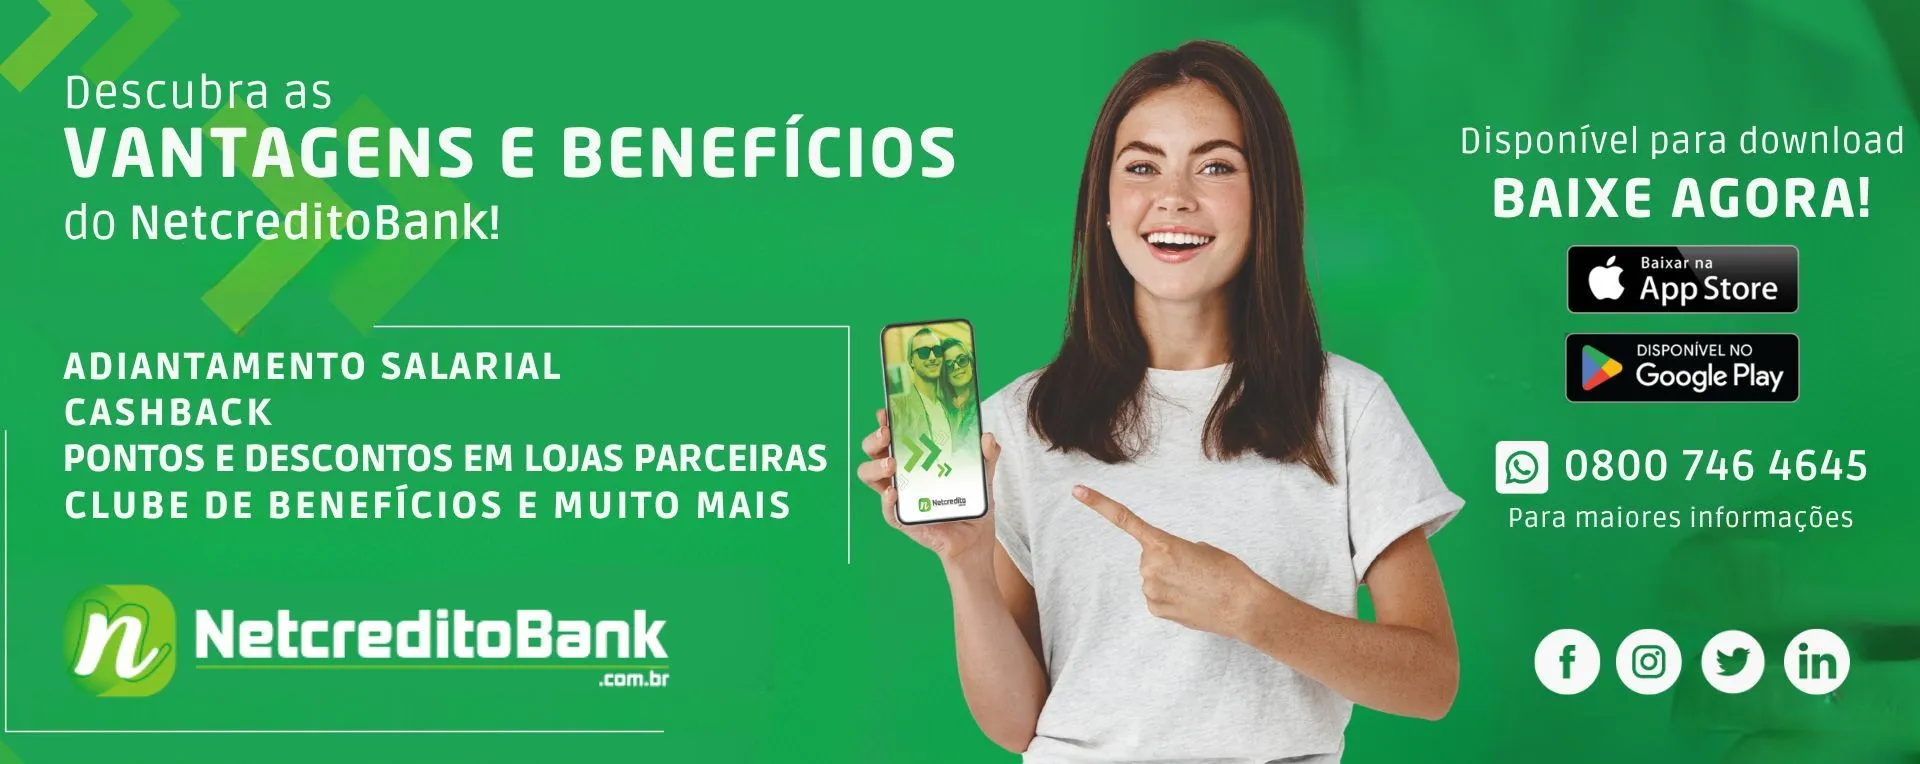 Netcreditobank